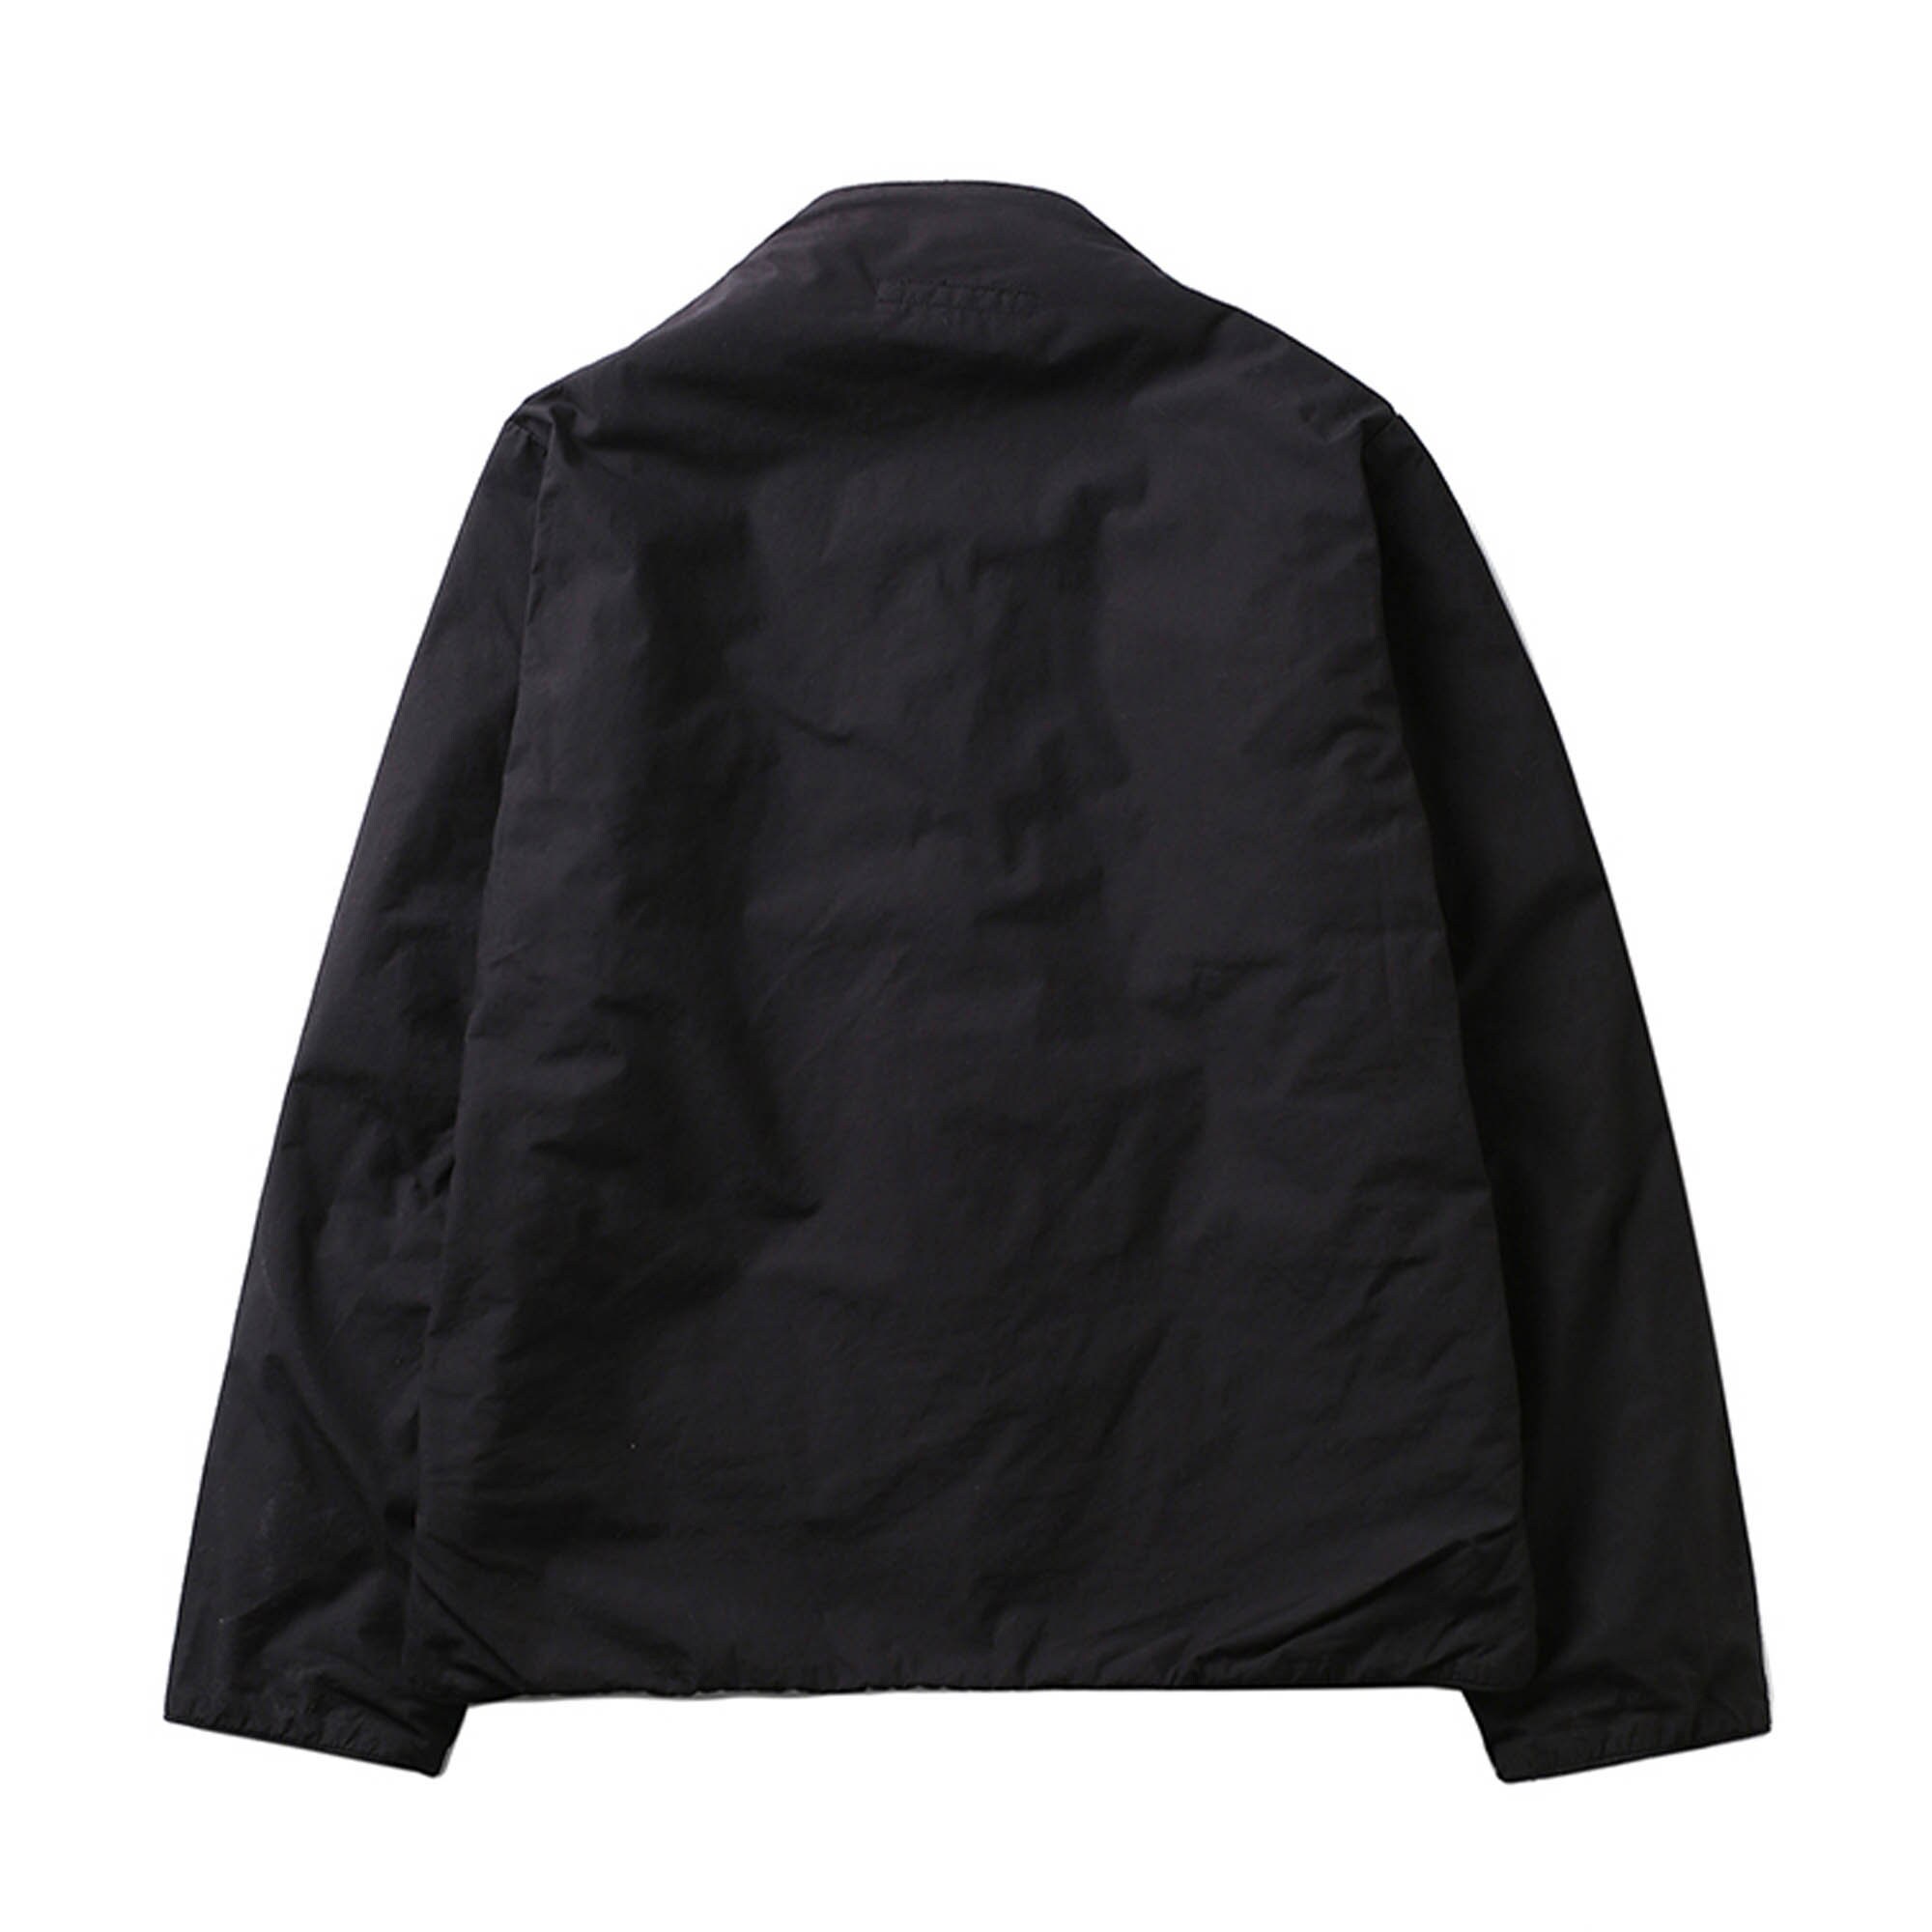 Winter Coat Padded winter jacket cotton padded jacket Black | Etsy